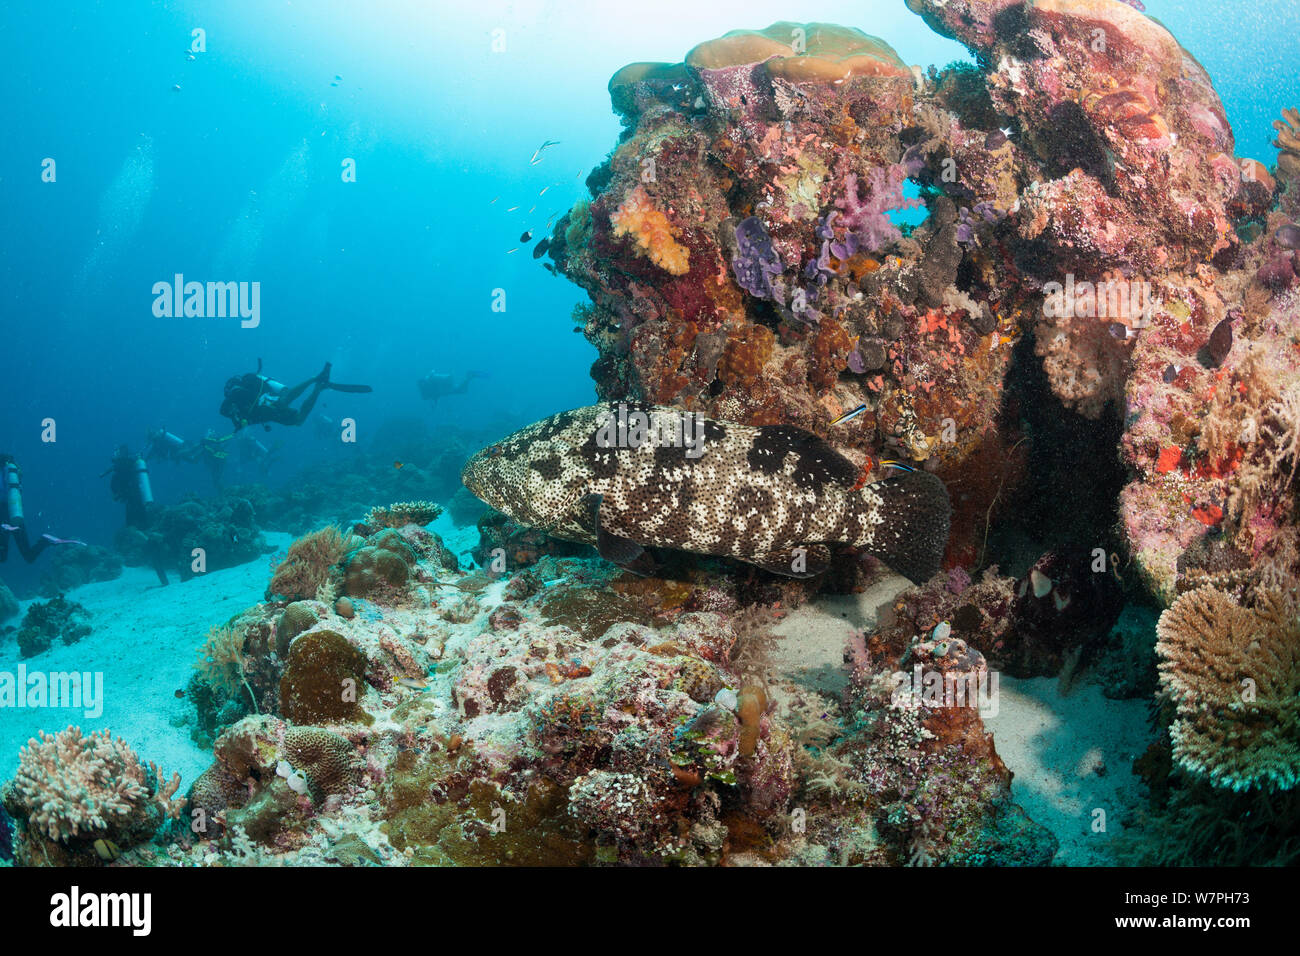 Blacksaddle grouper (Epinephelus howlandi) with scuba divers in background, Palau, Micronesia. Stock Photo